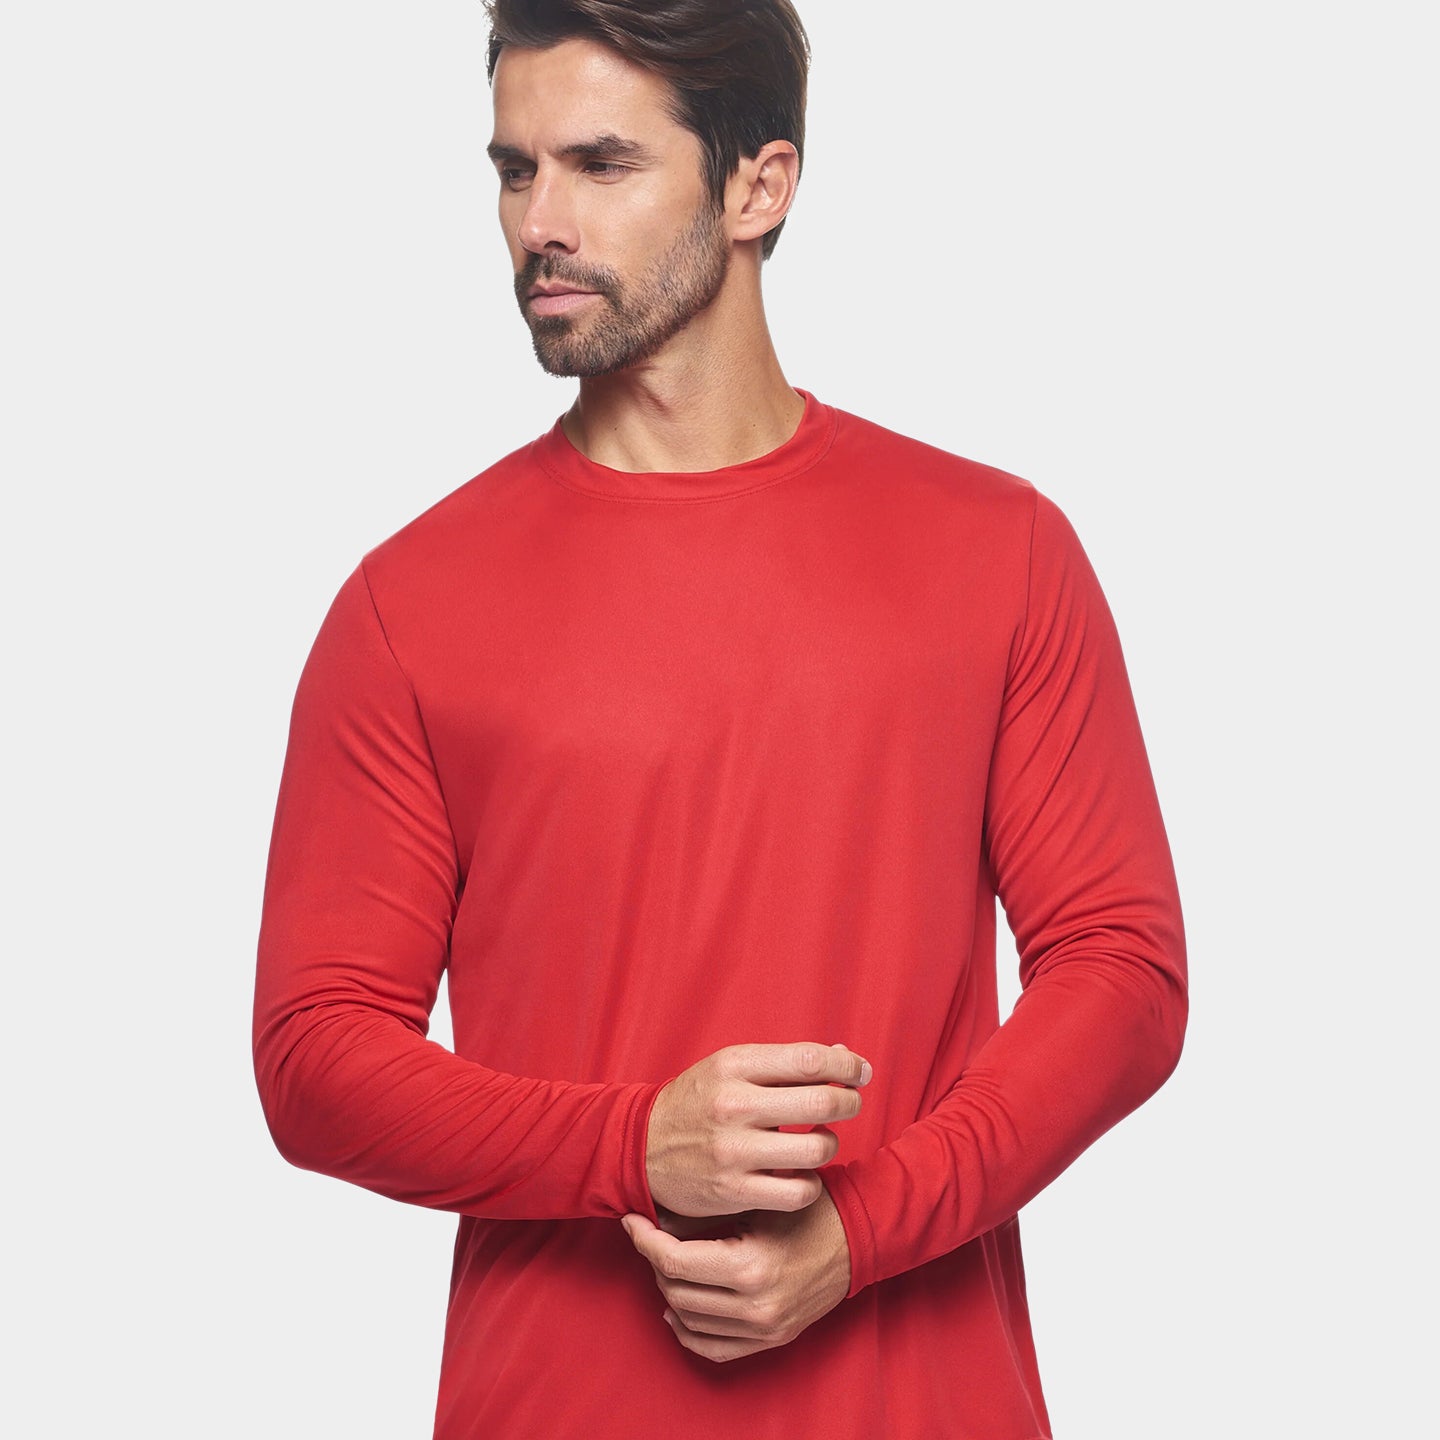 Expert Brand DriMax Men's Performance Long Sleeve Shirt, 2XL, Red A1